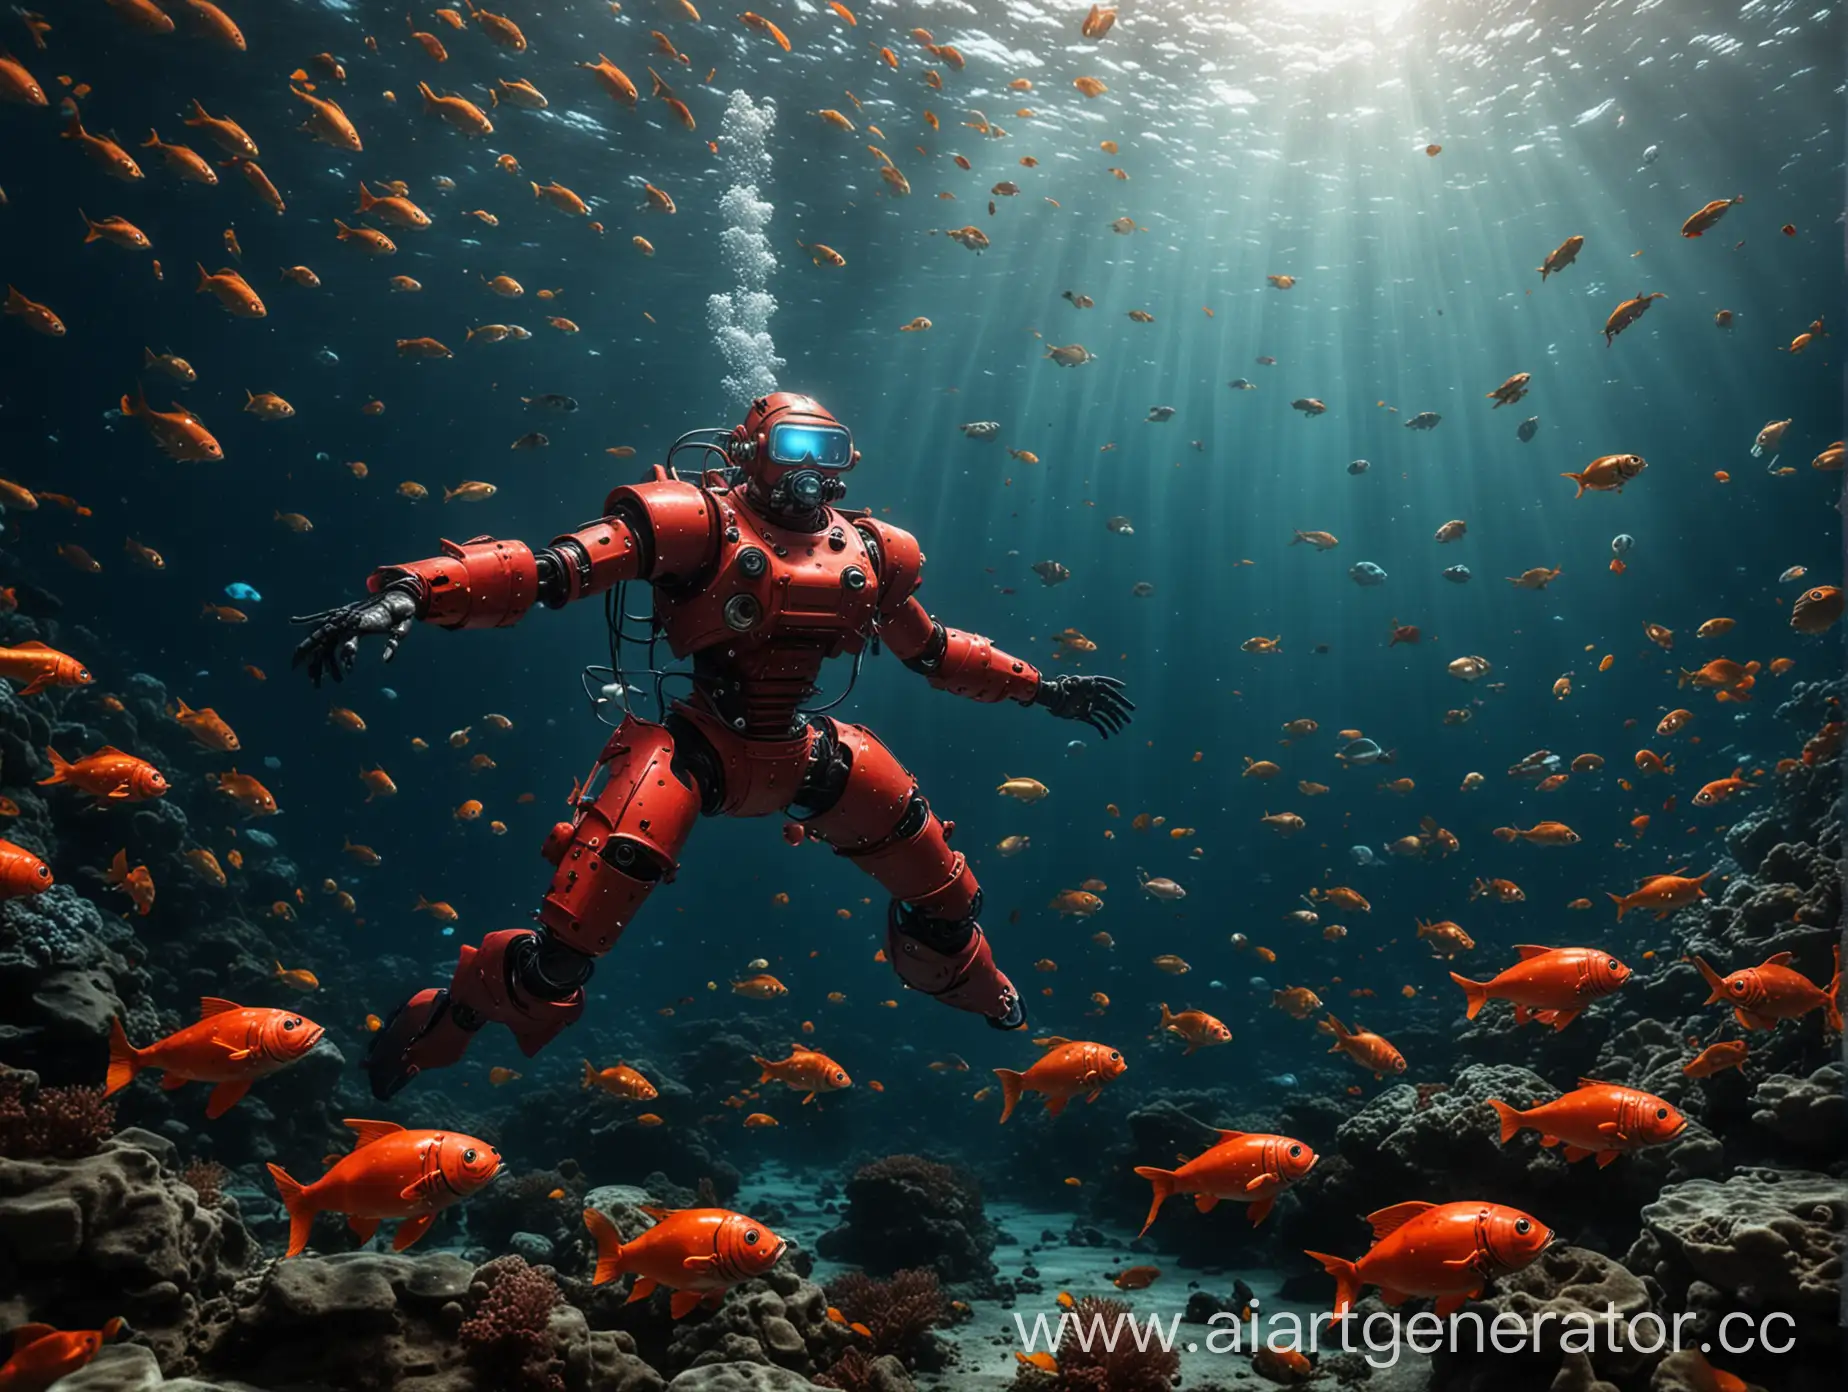 Красный робот-аквалангист плавает на дне океана среди множества ярких рыб